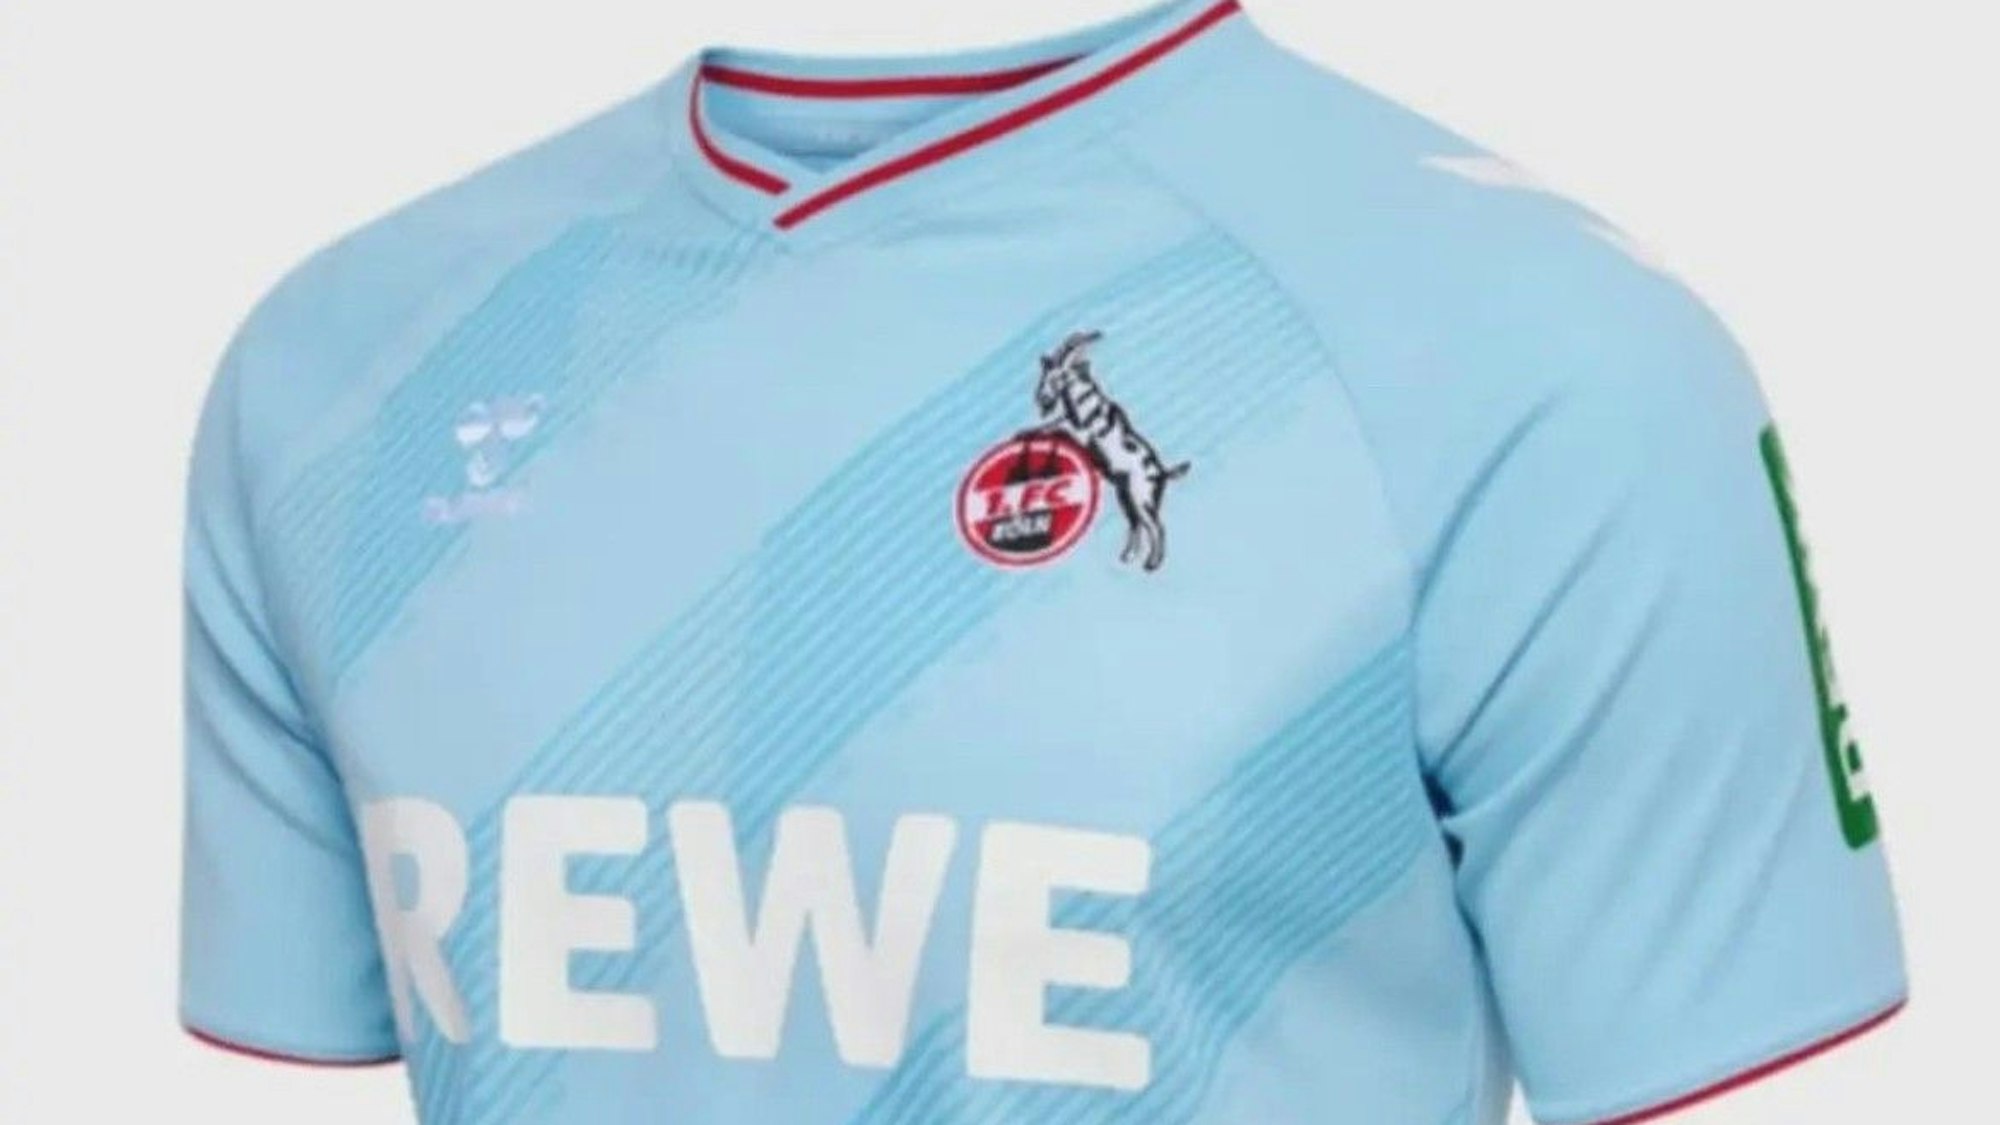 Ein hellblaues Trikot des 1. FC Köln, offenbar das neue Ausweichtrikot.